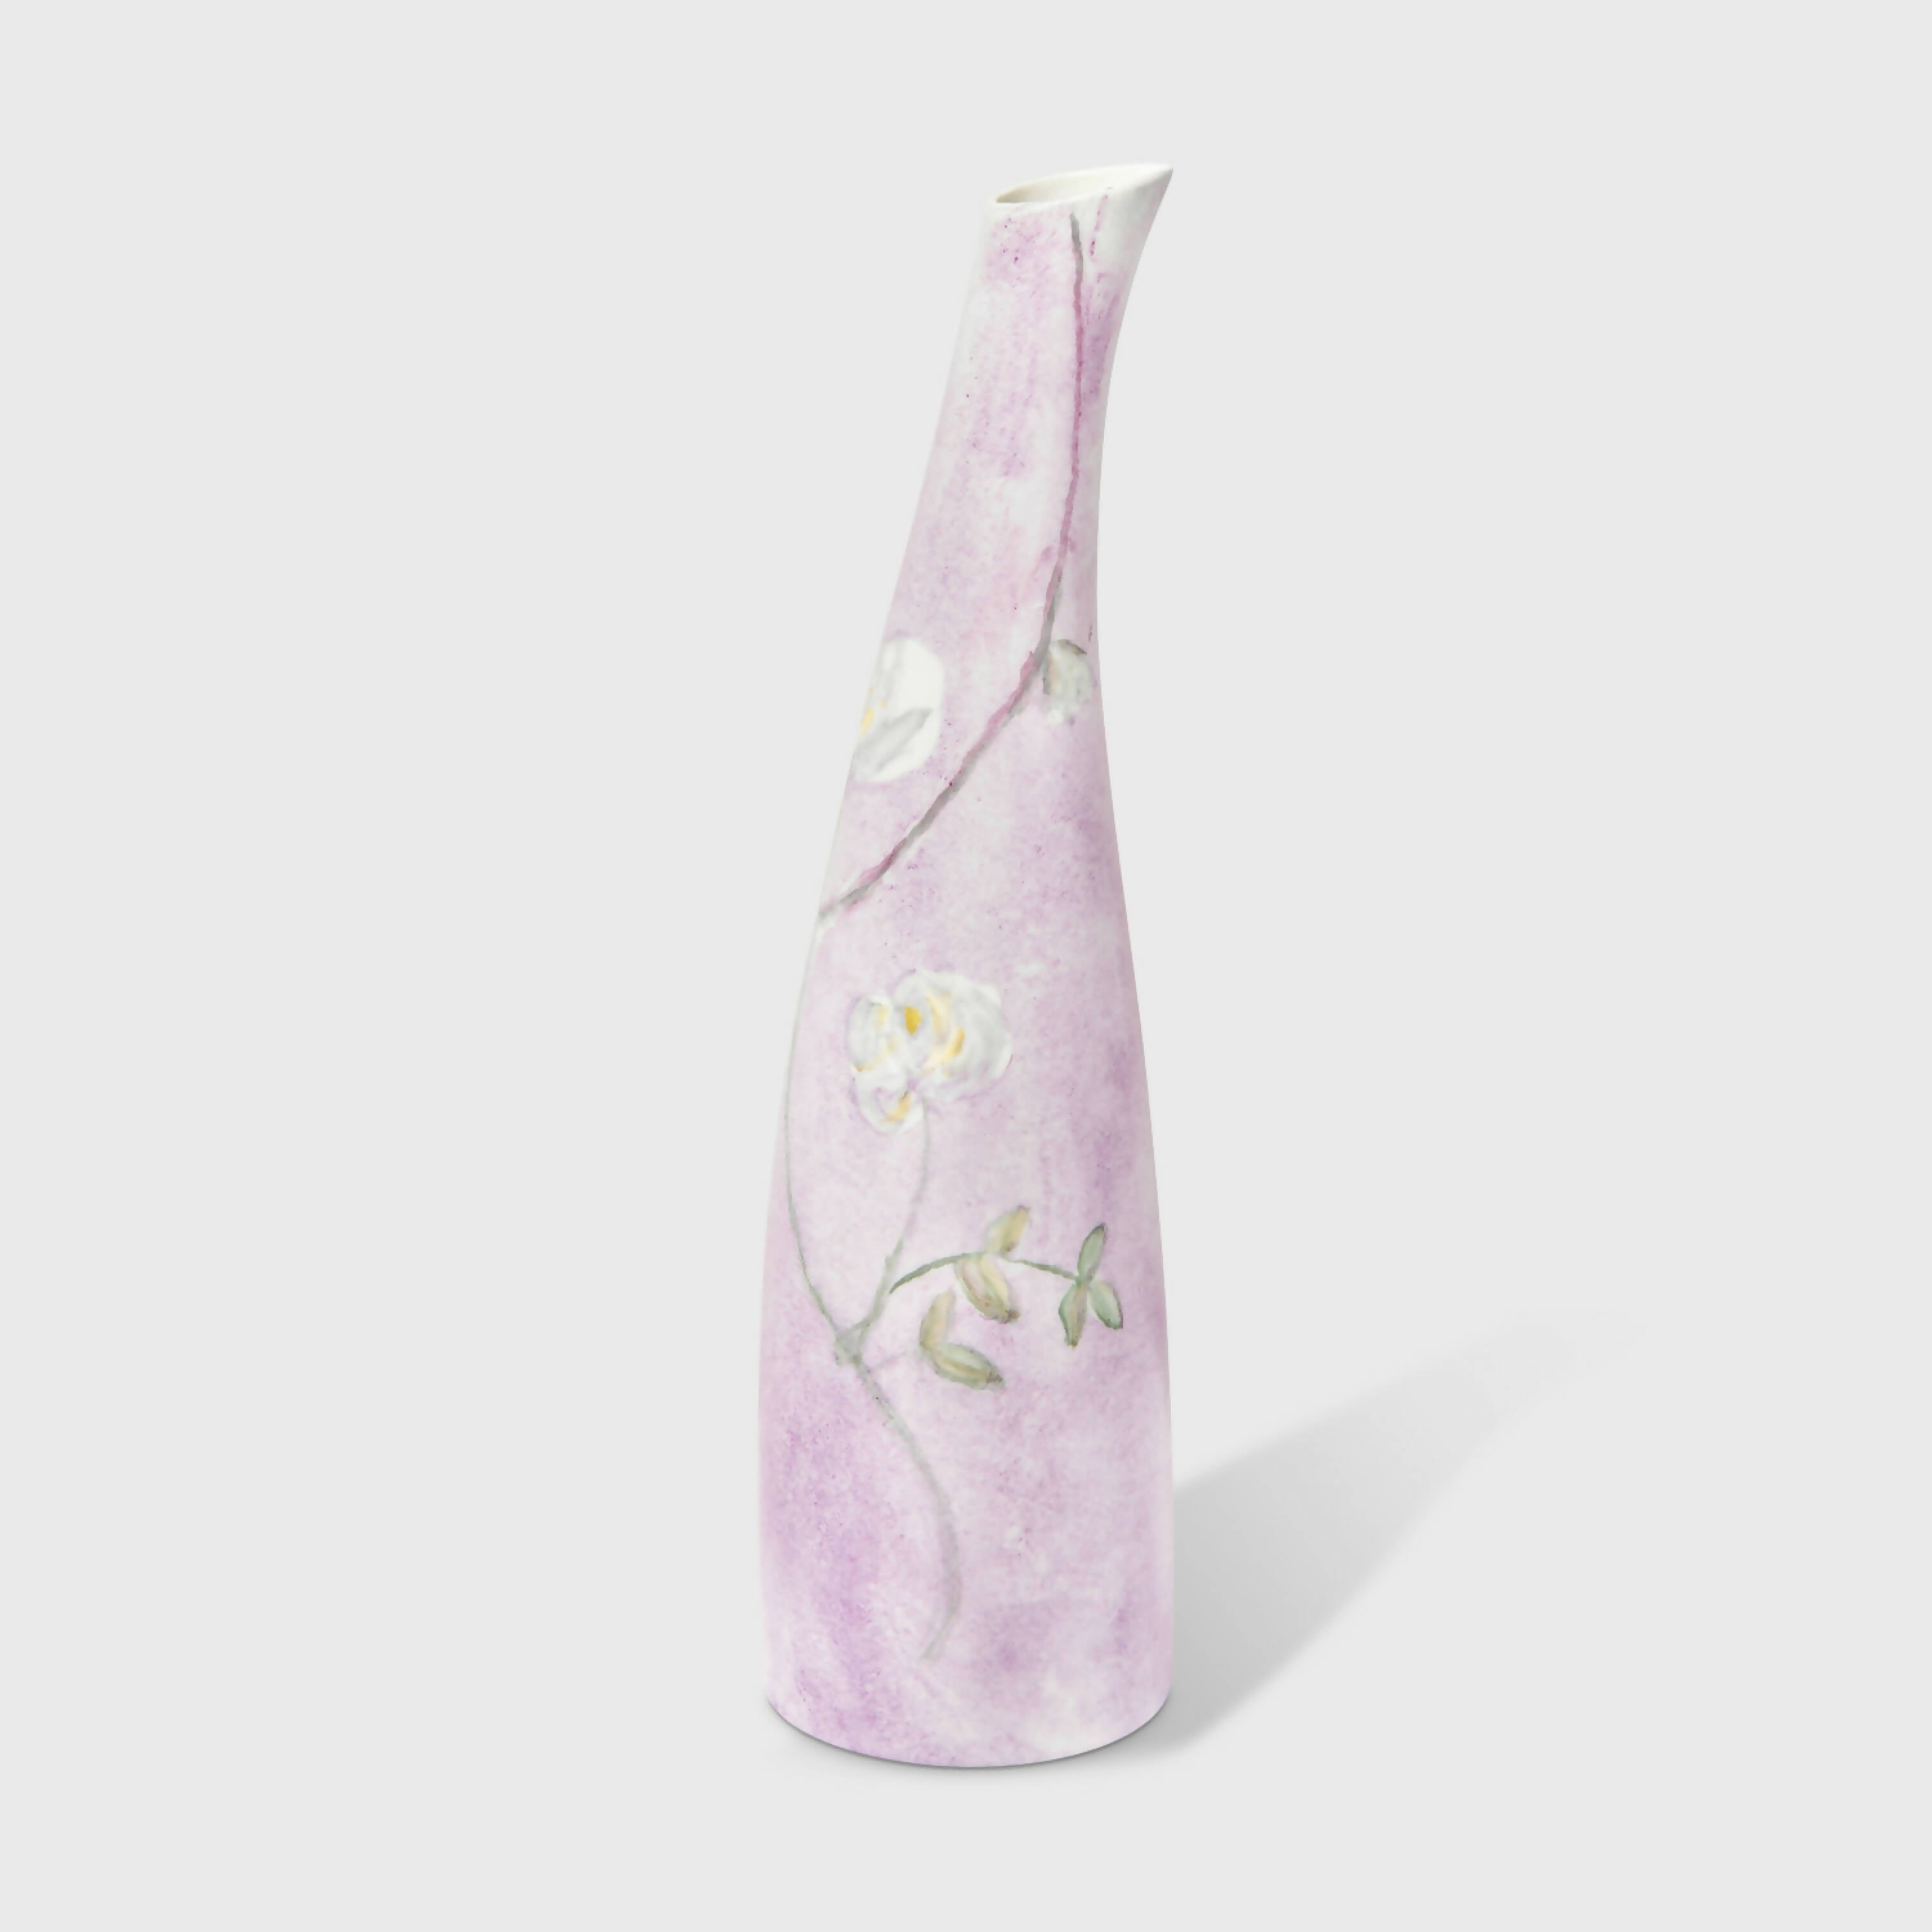 Vase soliflore Joli Flore penché | EMPREINTES Paris | EMPREINTES Paris